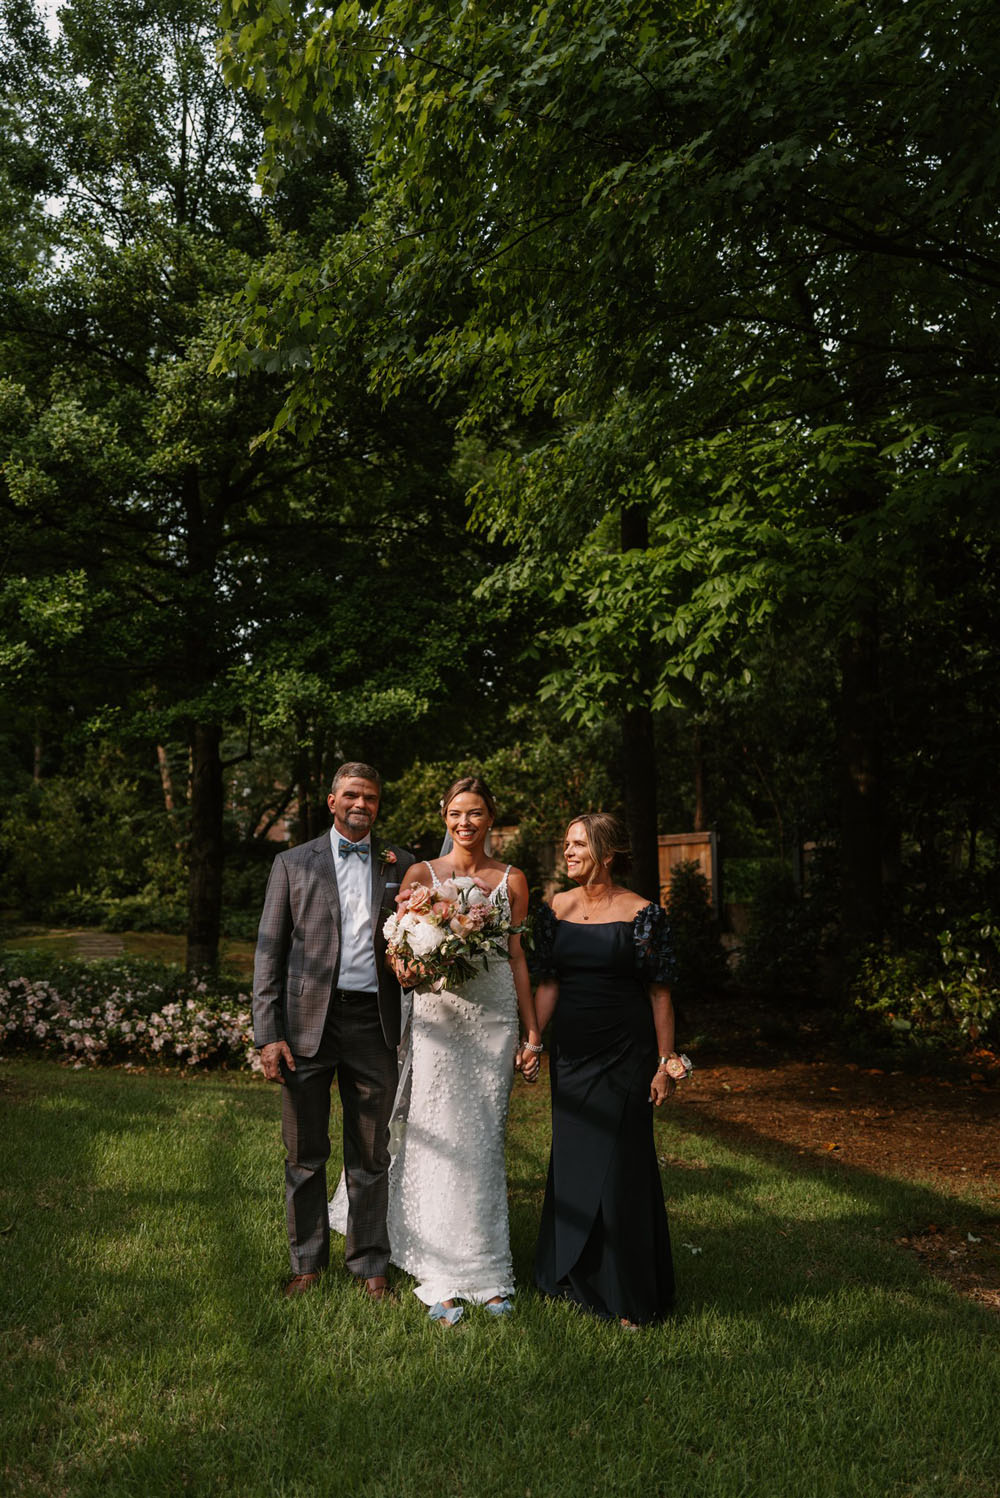 A beautiful backyard wedding in Memphis